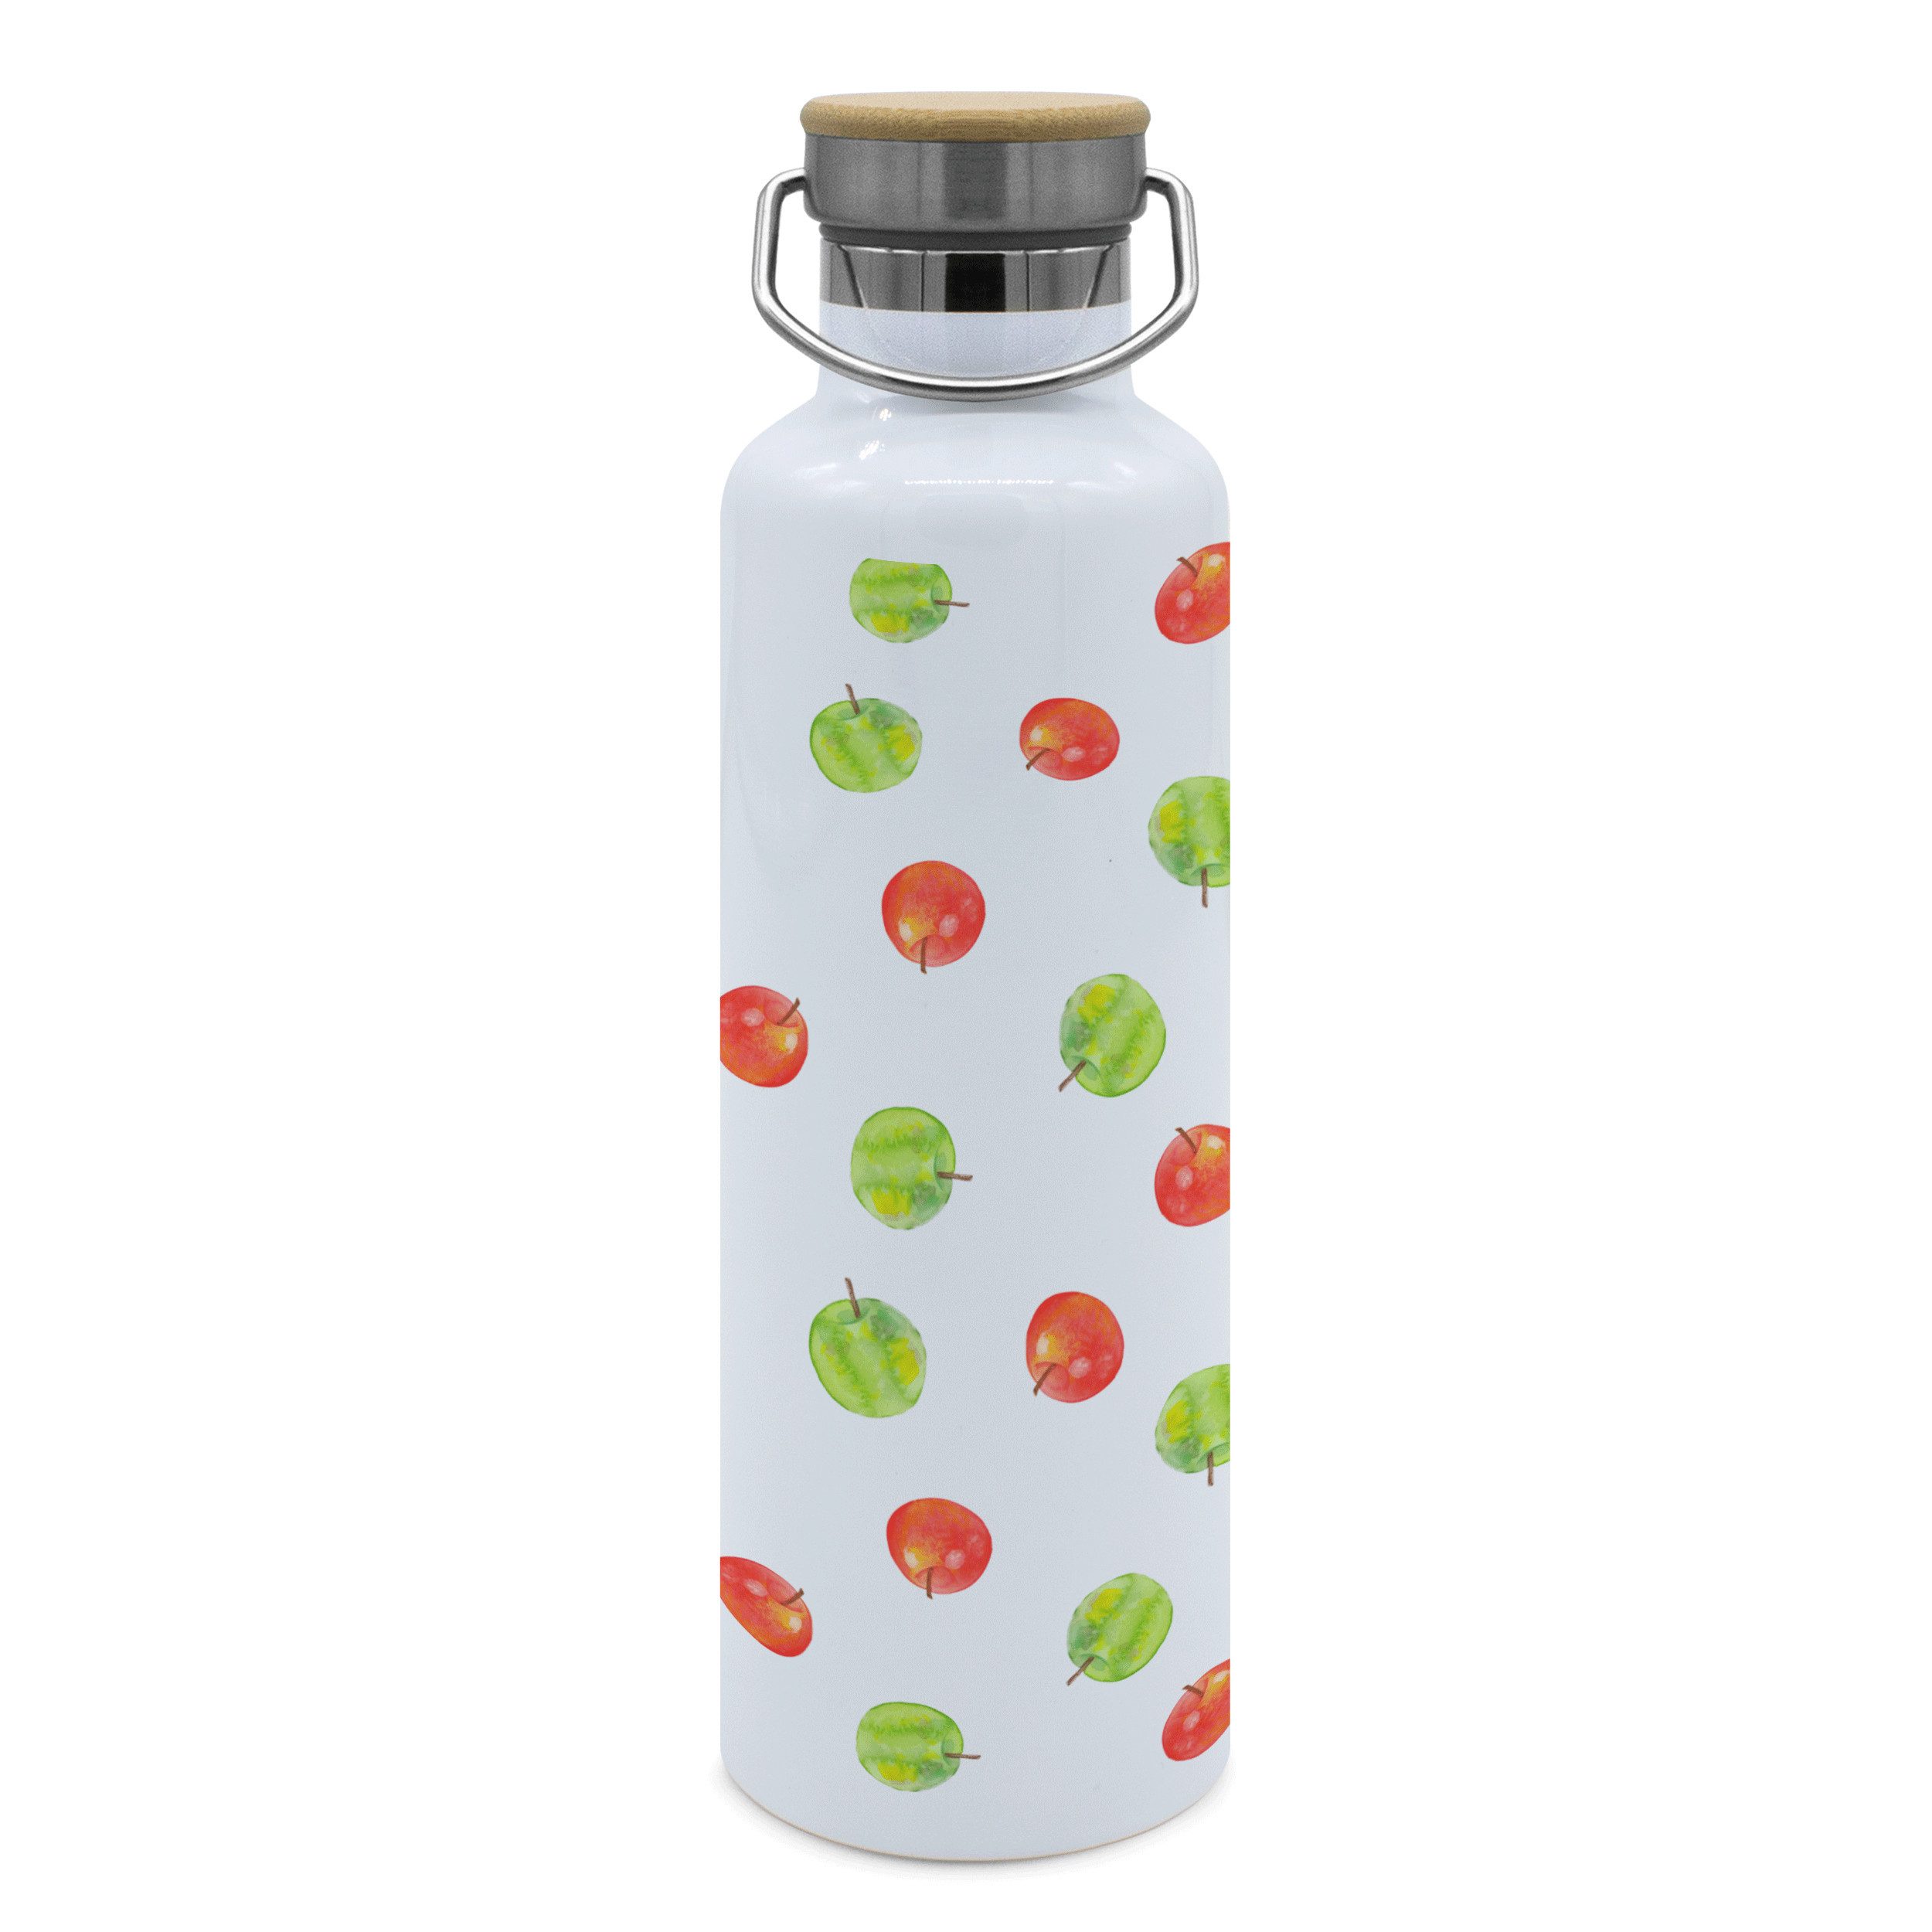 Mr. & Mrs. Panda Feldflasche Apfel Traum - Gelb - Geschenk, Muster, Flasche zum Sport, Thermosflas, Ideal für aktiven Lebensstil